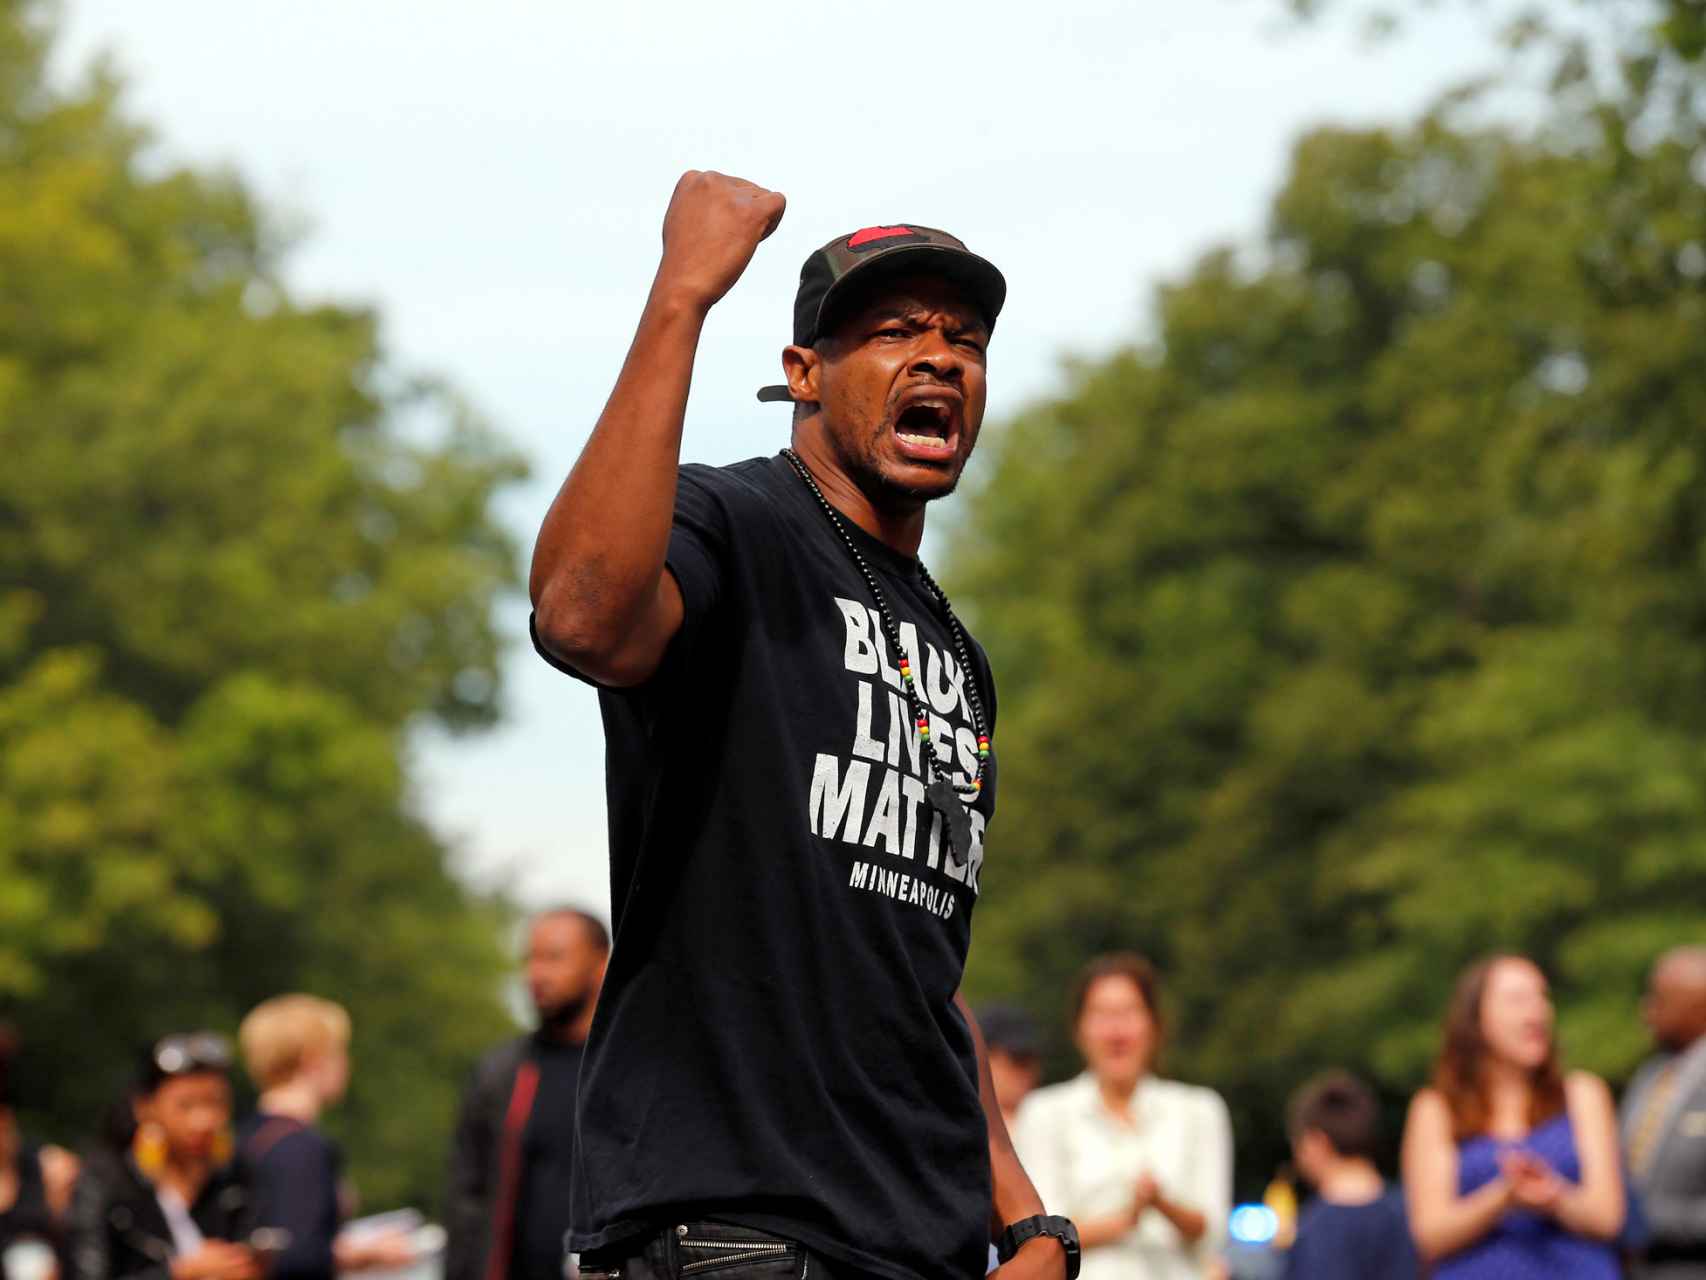 Un manifestante luce una camiseta reclamando la importancia de las vidas negras.